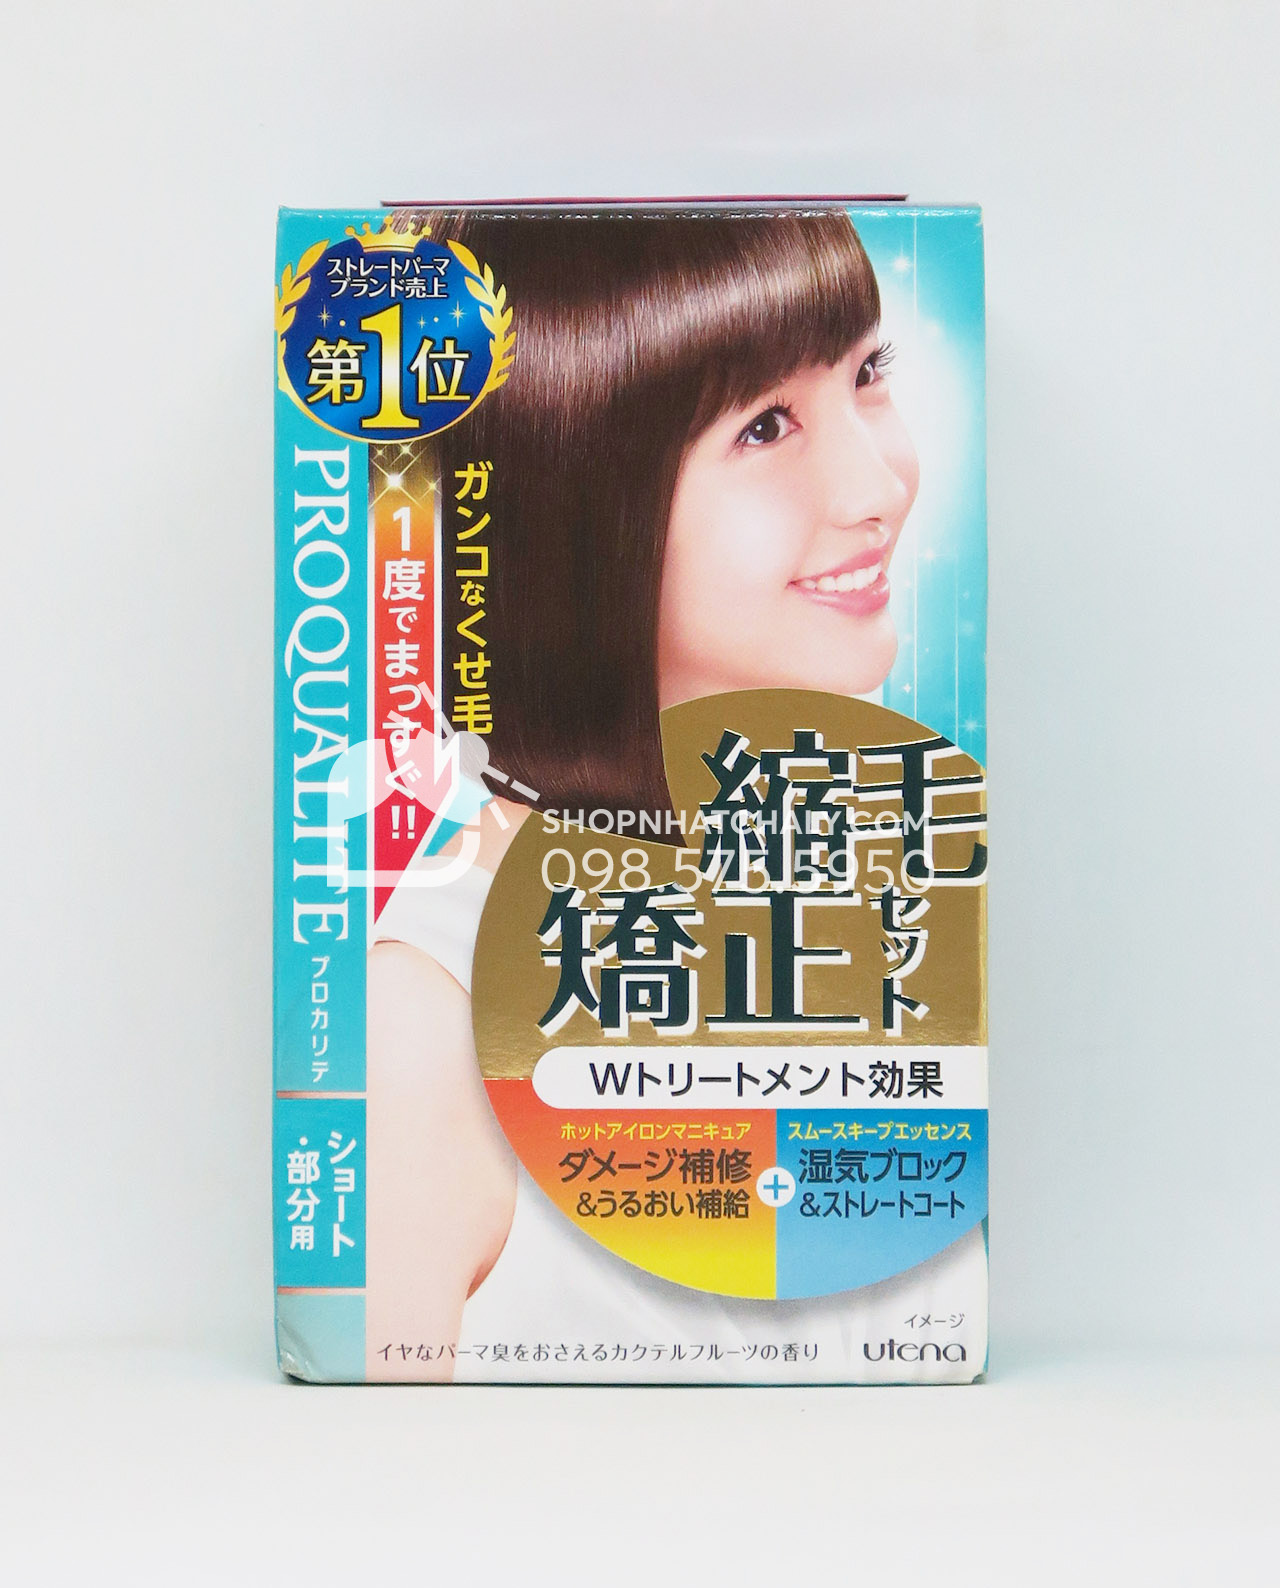 Thuốc duỗi tóc của Nhật - Proqualite W Treatment Set cao cấp Bạn muốn có một kiểu tóc thẳng và mượt mà như sao Hàn quốc? Hãy thử sử dụng Proqualite W Treatment Set - thuốc duỗi tóc cao cấp của Nhật Bản. Sản phẩm làm từ những thành phần tự nhiên giúp tóc bạn chắc khỏe và bóng mượt hơn bao giờ hết. Thử ngay để tìm ra bí quyết của một kiểu tóc hoàn hảo.